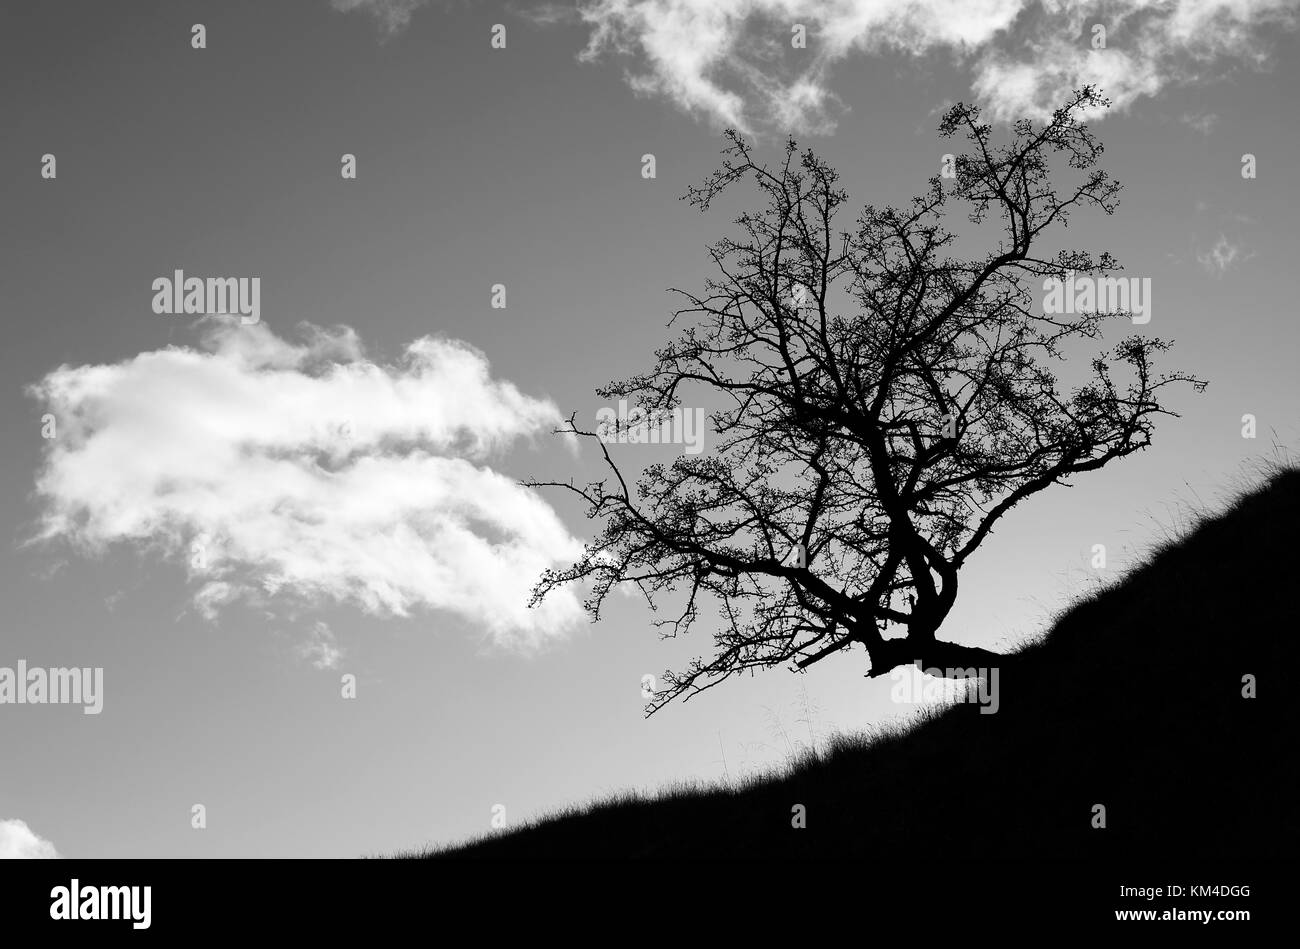 Albero di biancospino, Crataegus monogyna, su una collina che crea una silhouette drammatica, l'effetto iniziale è dovuto all'esposizione della fotocamera per uno sfondo più luminoso Foto Stock